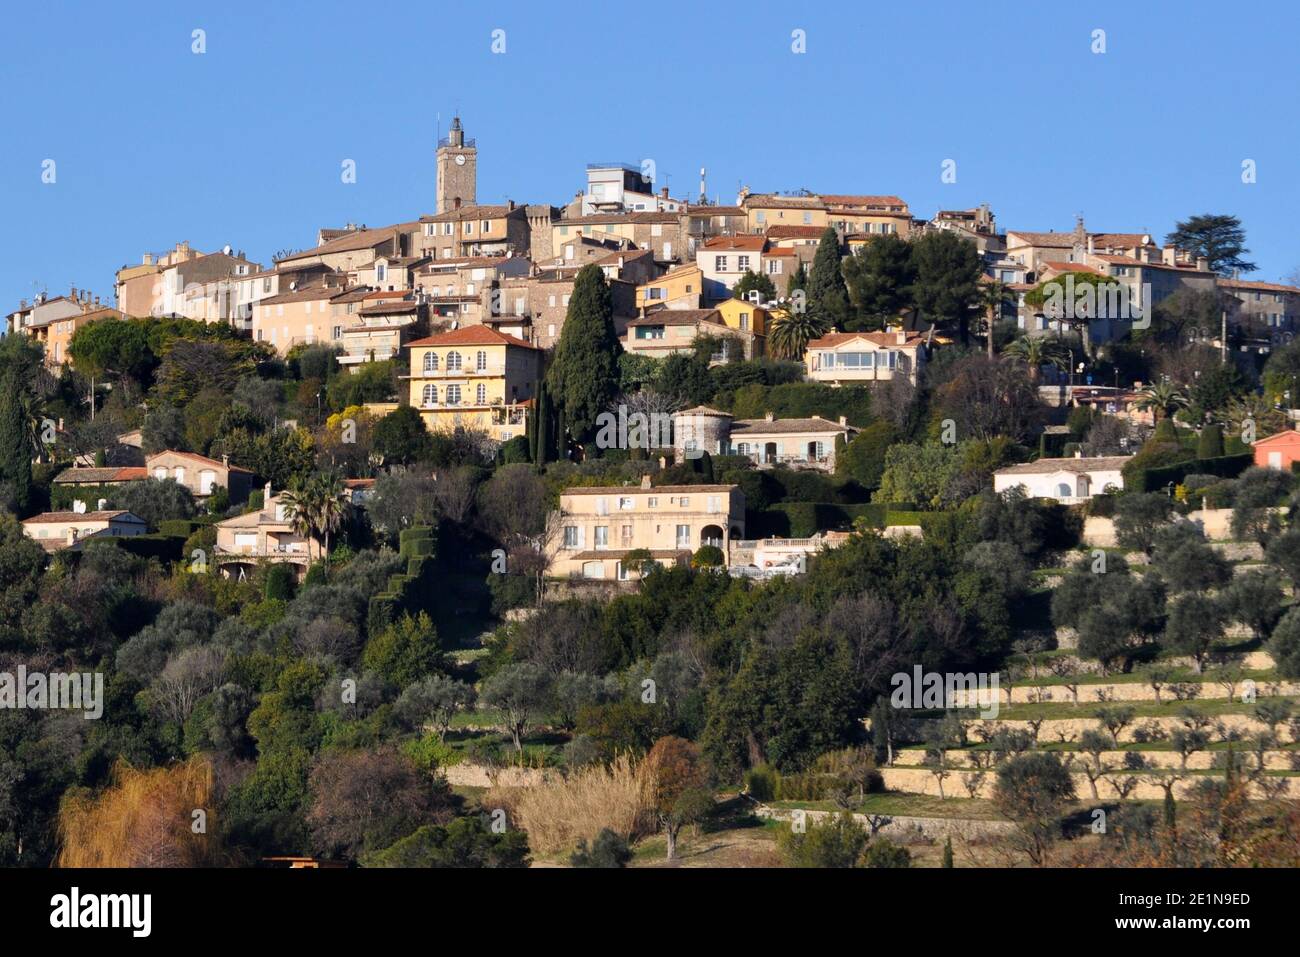 France, côte d'azur, Mougins, ce magnifique village médiéval se dresse entre pins et oliviers, Pablo Picasso y vit 15 ans. Banque D'Images